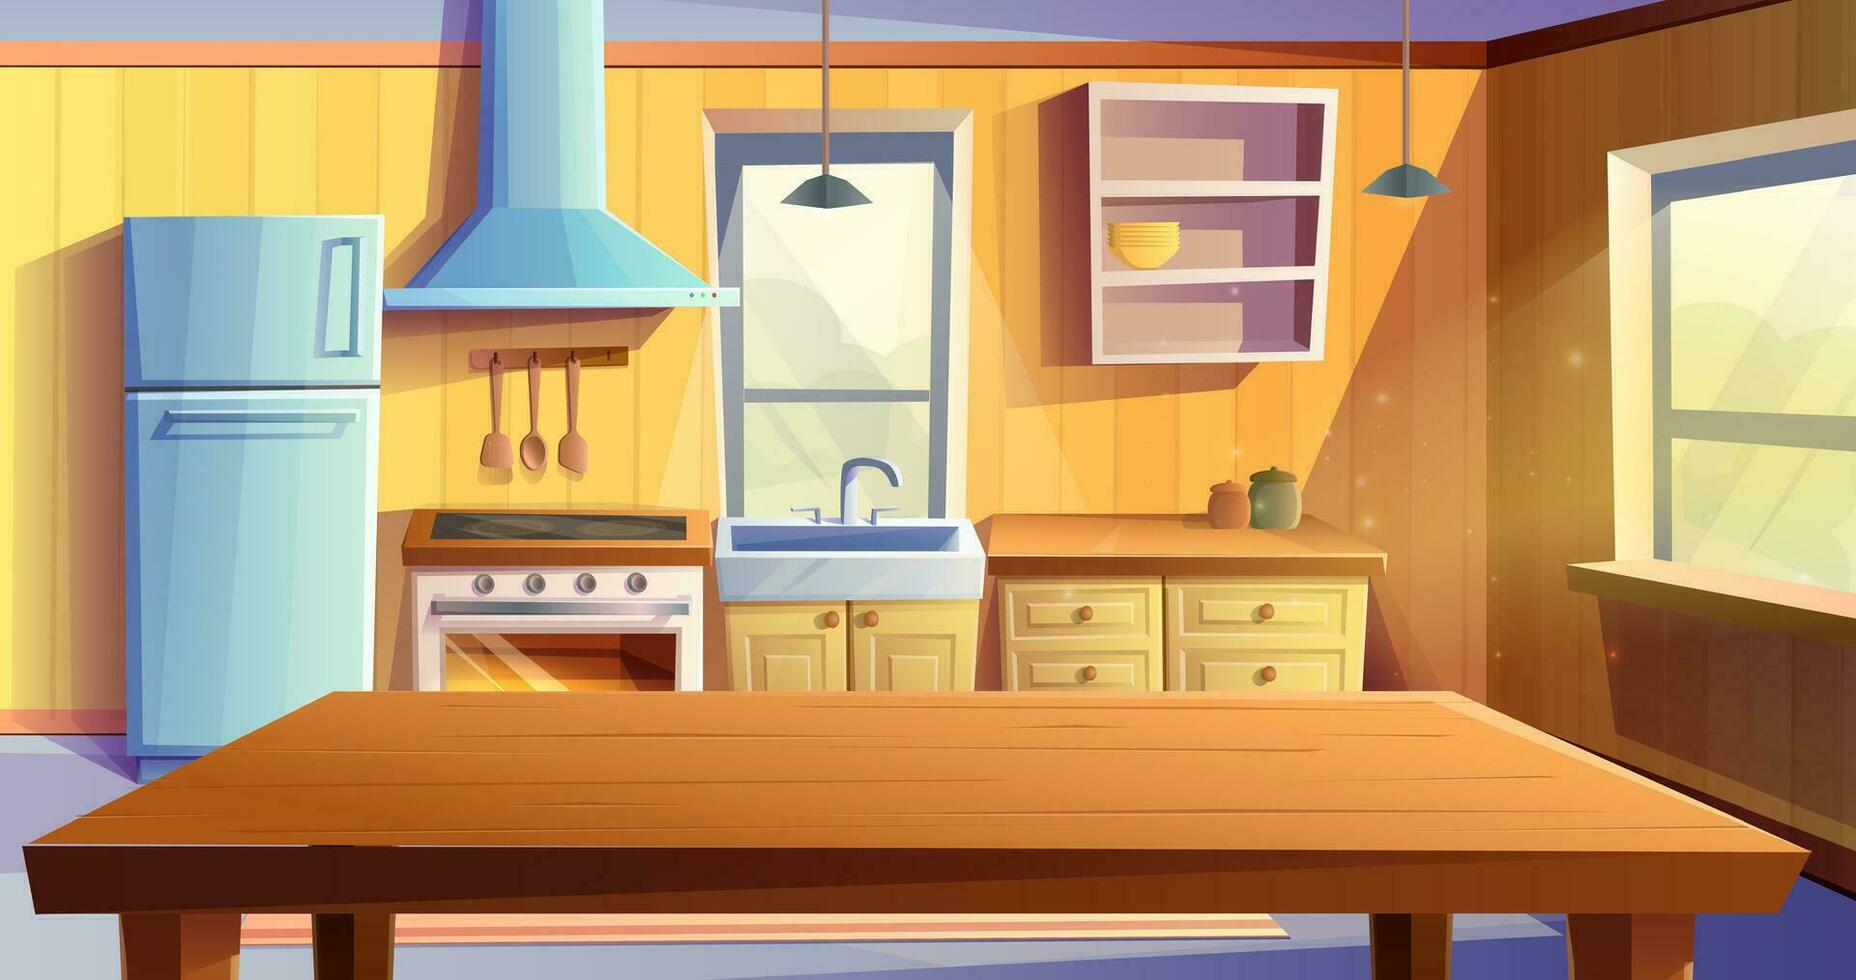 Vektor Karikatur Stil Illustration von Küche Zimmer. Essen Zimmer mit Essen hölzern Tisch. Kühlschrank, Ofen mit ein Herd und Kochfeld, Waschbecken, Kabinette und Extraktor Haube.